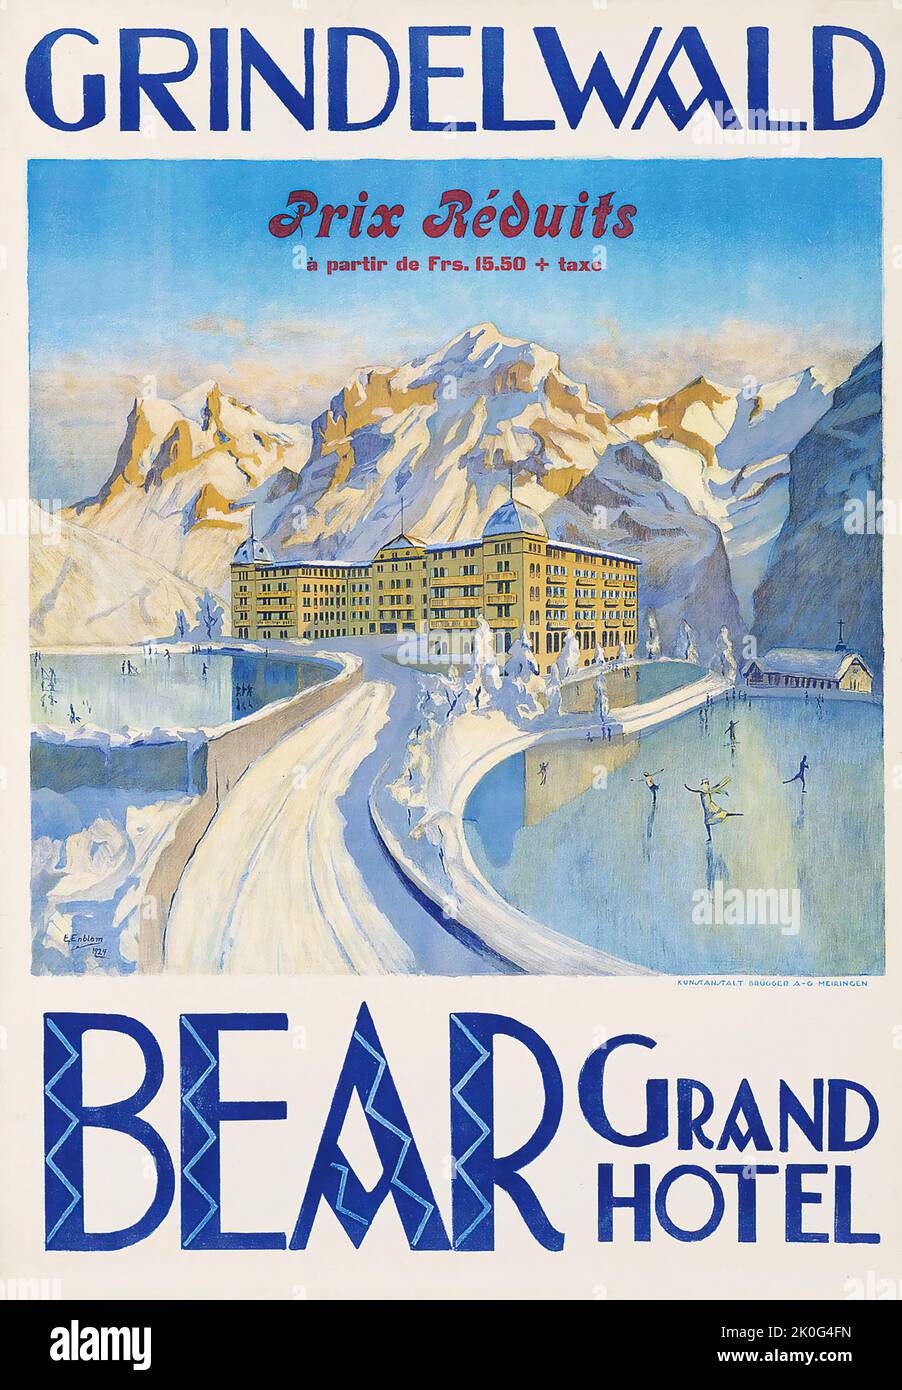 Poster de voyage par E. Enblom - GRINDELWALD, BEAR GRAND HOTEL - 1924 - Schweiz, Suisse, Suisse Banque D'Images